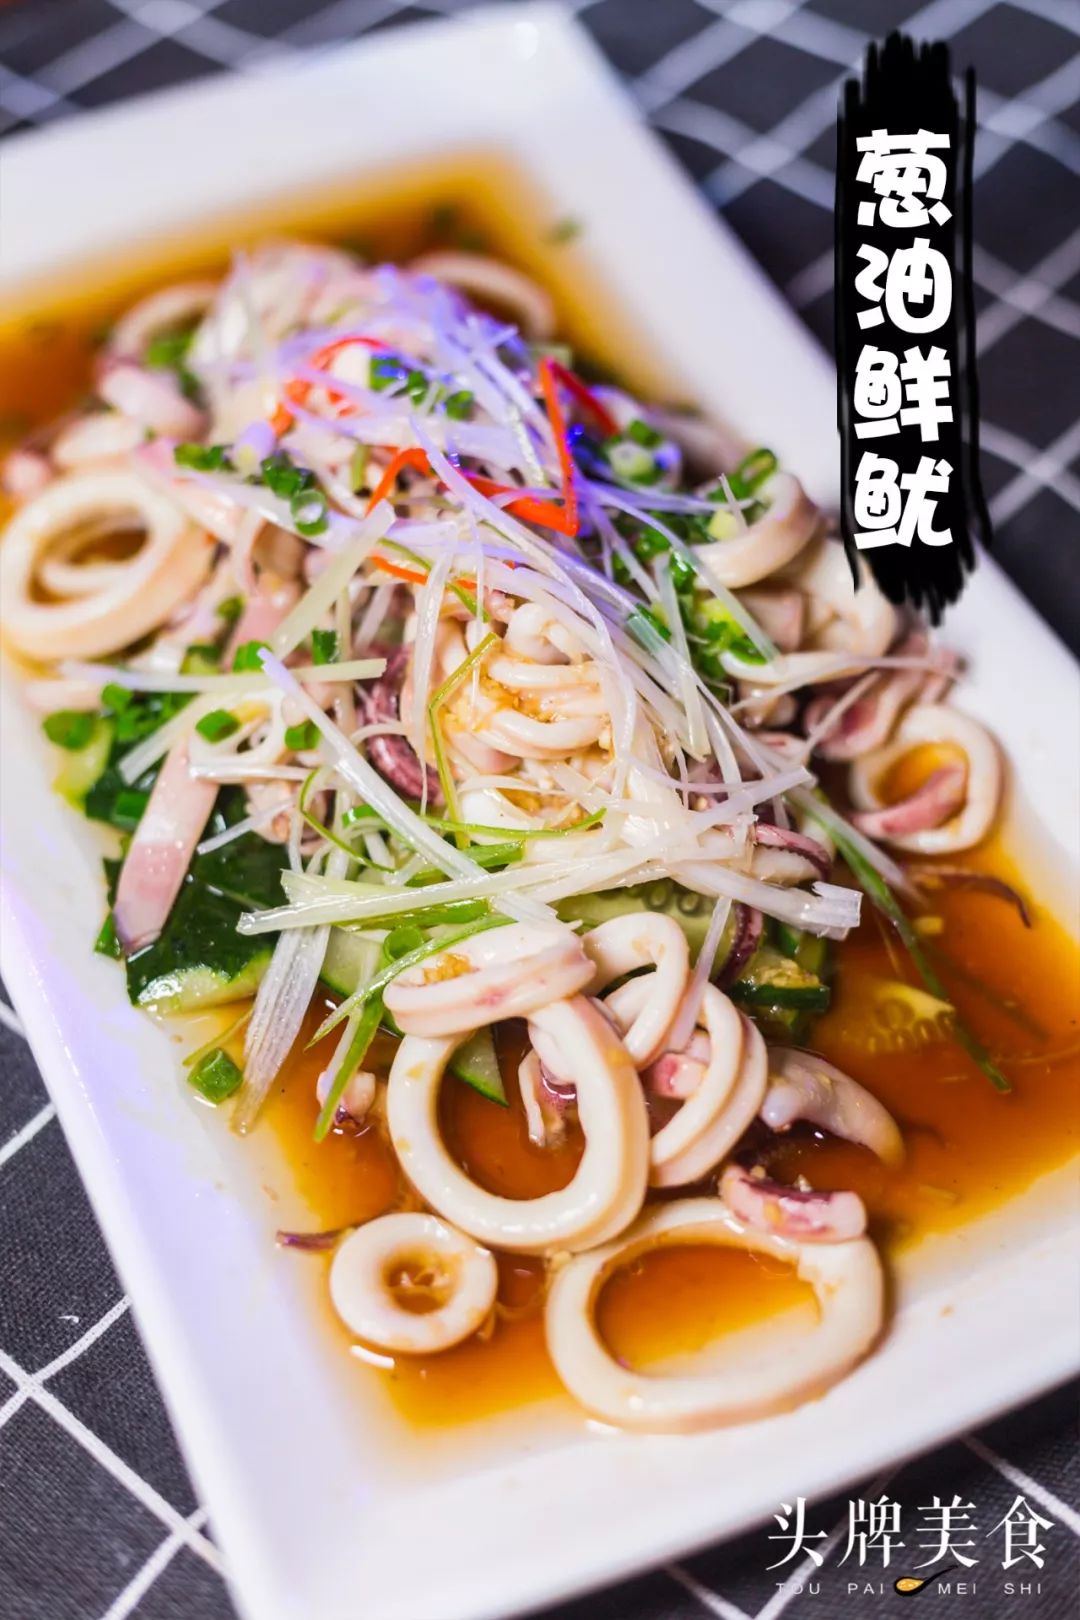 葱油鱿鱼是一道传统闽菜的做法,既保留了海鲜的原味,也留住了营养.